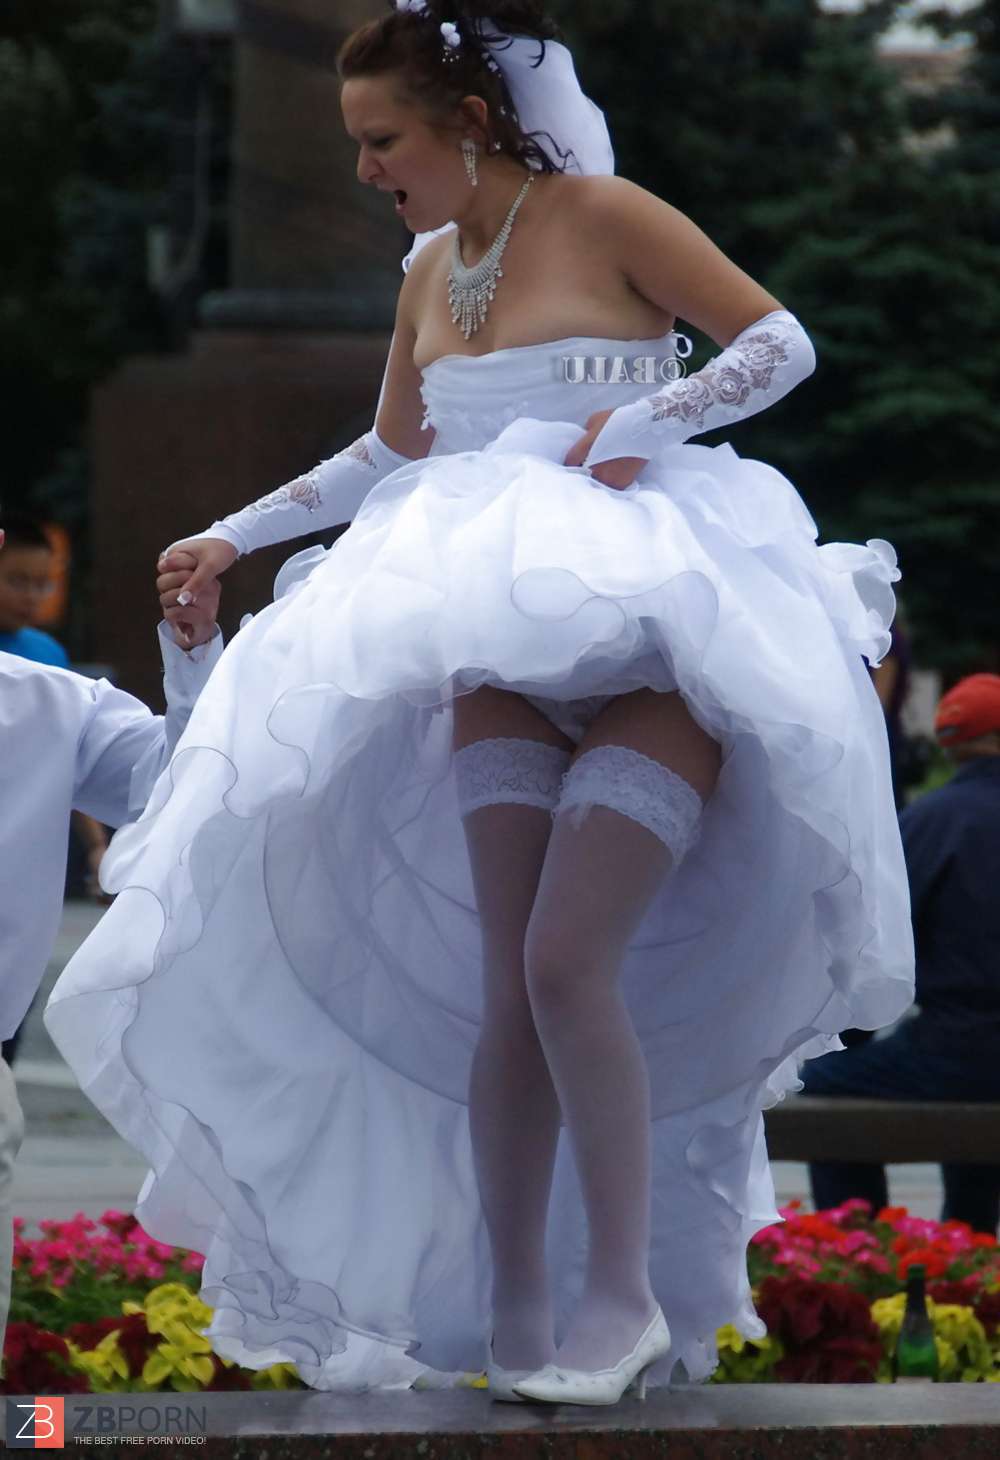 Amateur Public Upskirts Brides | Sex Pictures Pass